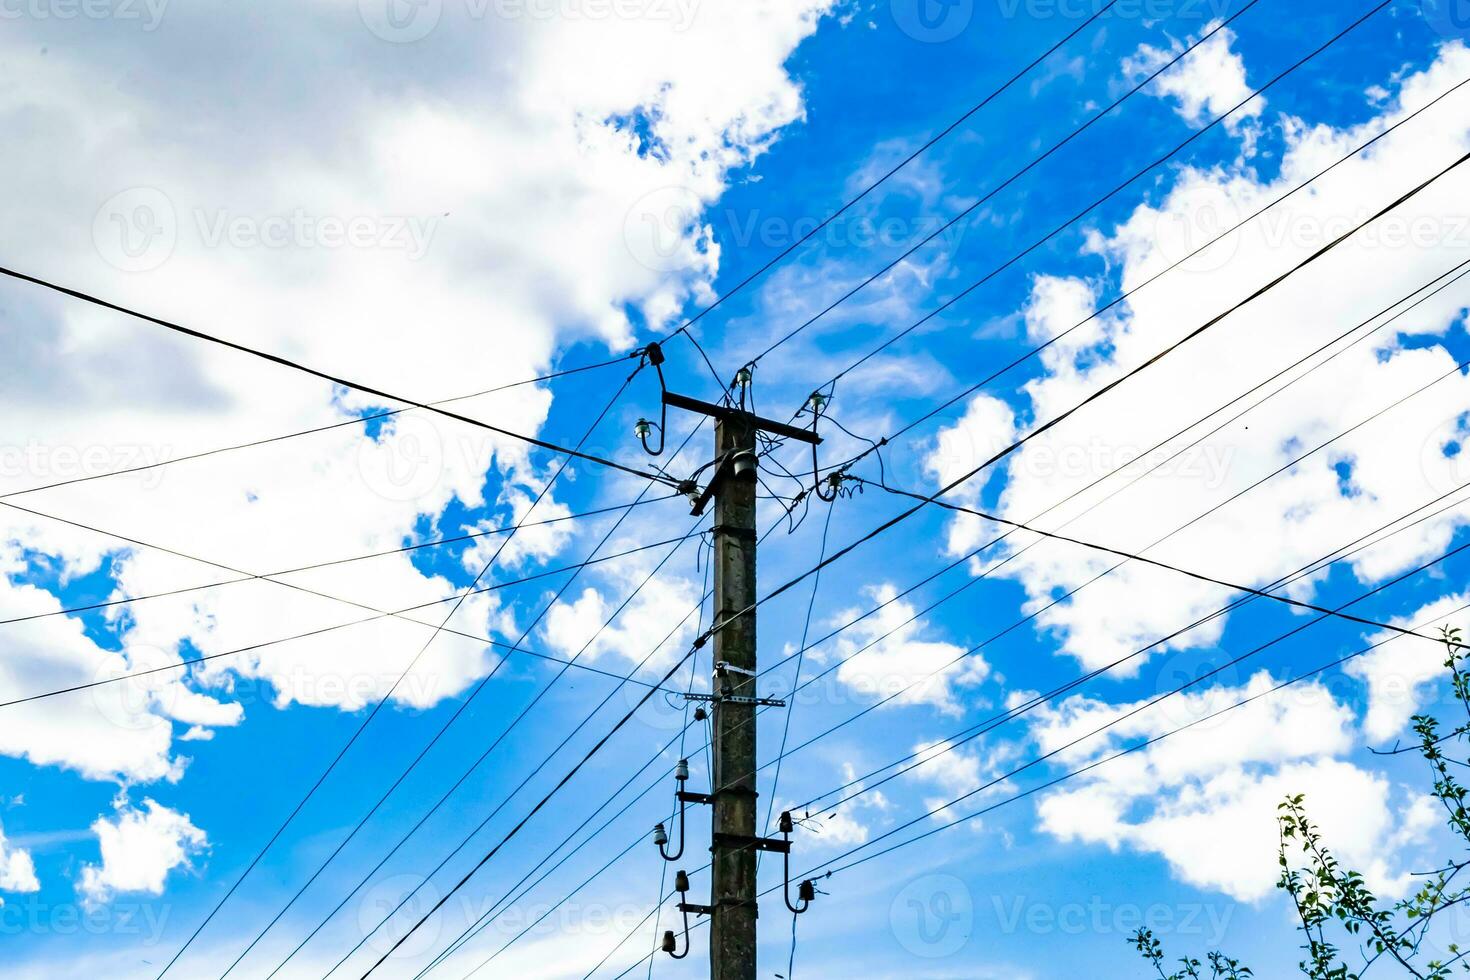 Poteau électrique de puissance avec fil de ligne sur fond coloré close up photo